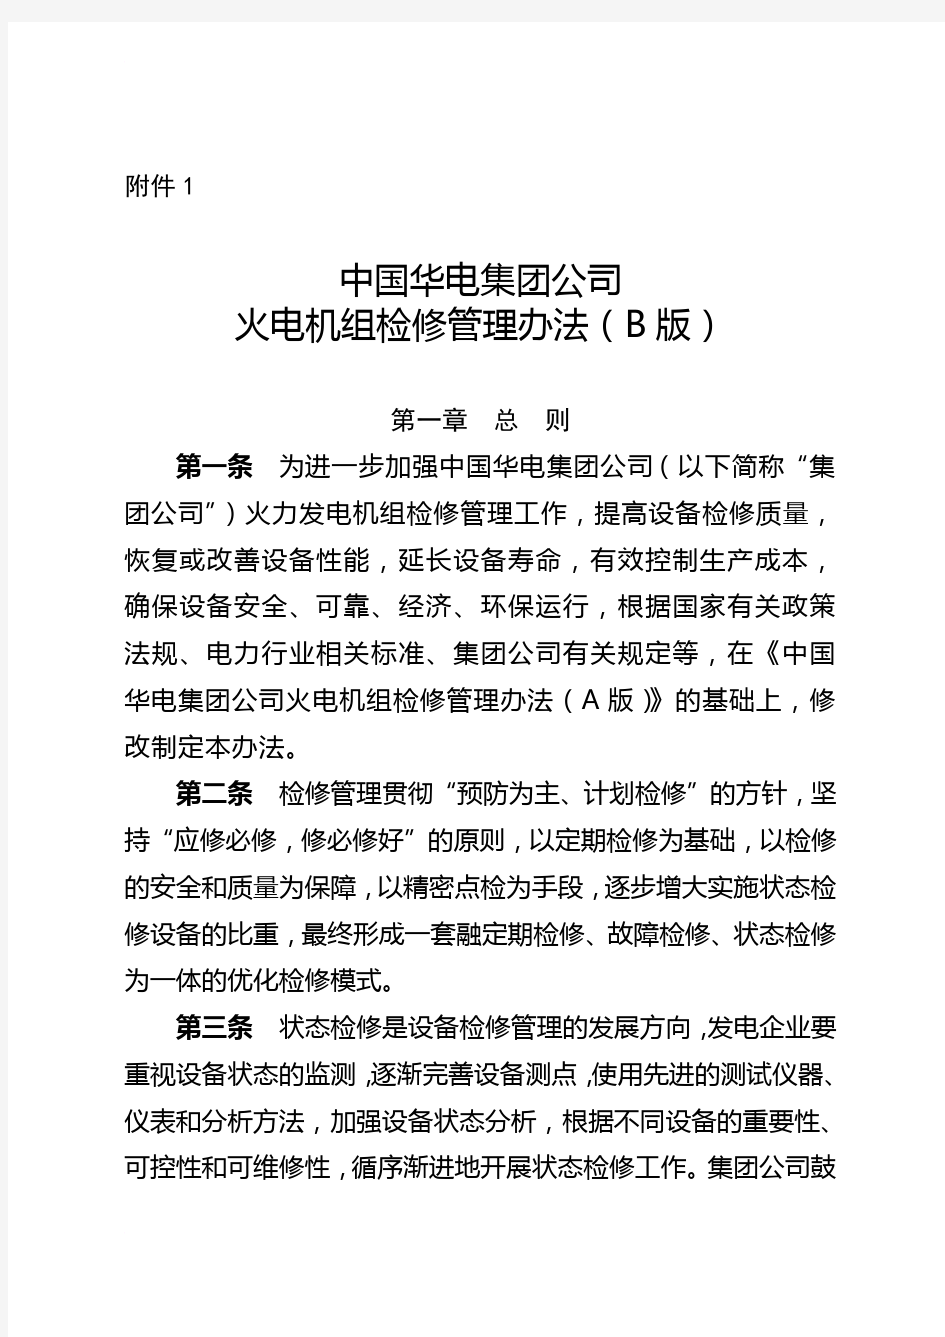 中国华电集团公司火电机组检修管理办法(B版)